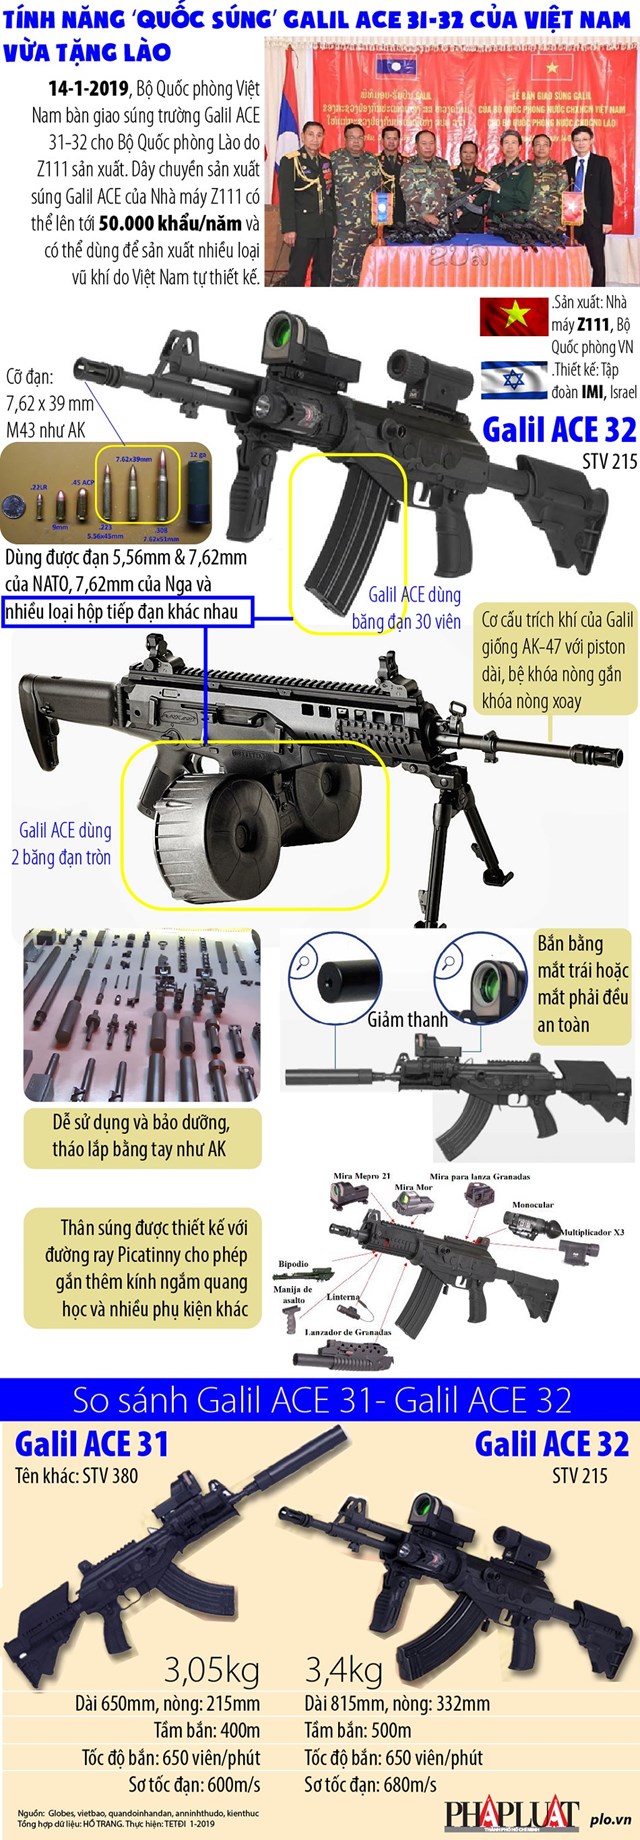 [Infographic] Uy lực "quốc súng" Galil ACE 31-32 của Việt Nam vừa tặng Lào - Ảnh 1